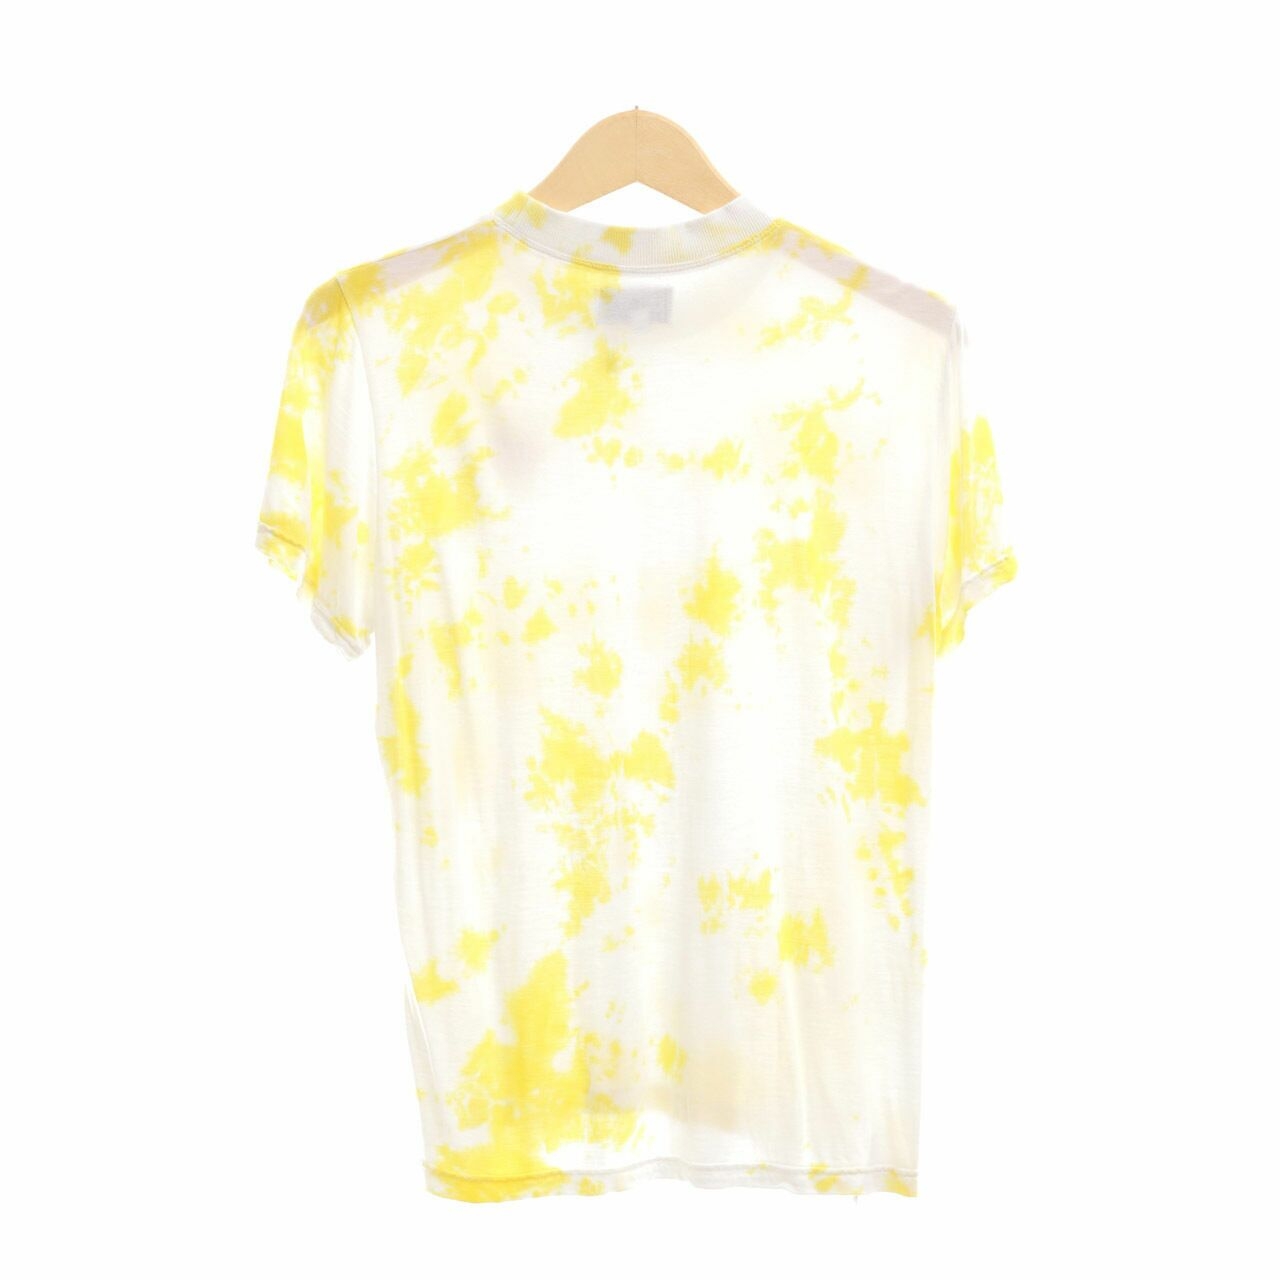 suku-home Yellow & White Tshirt 